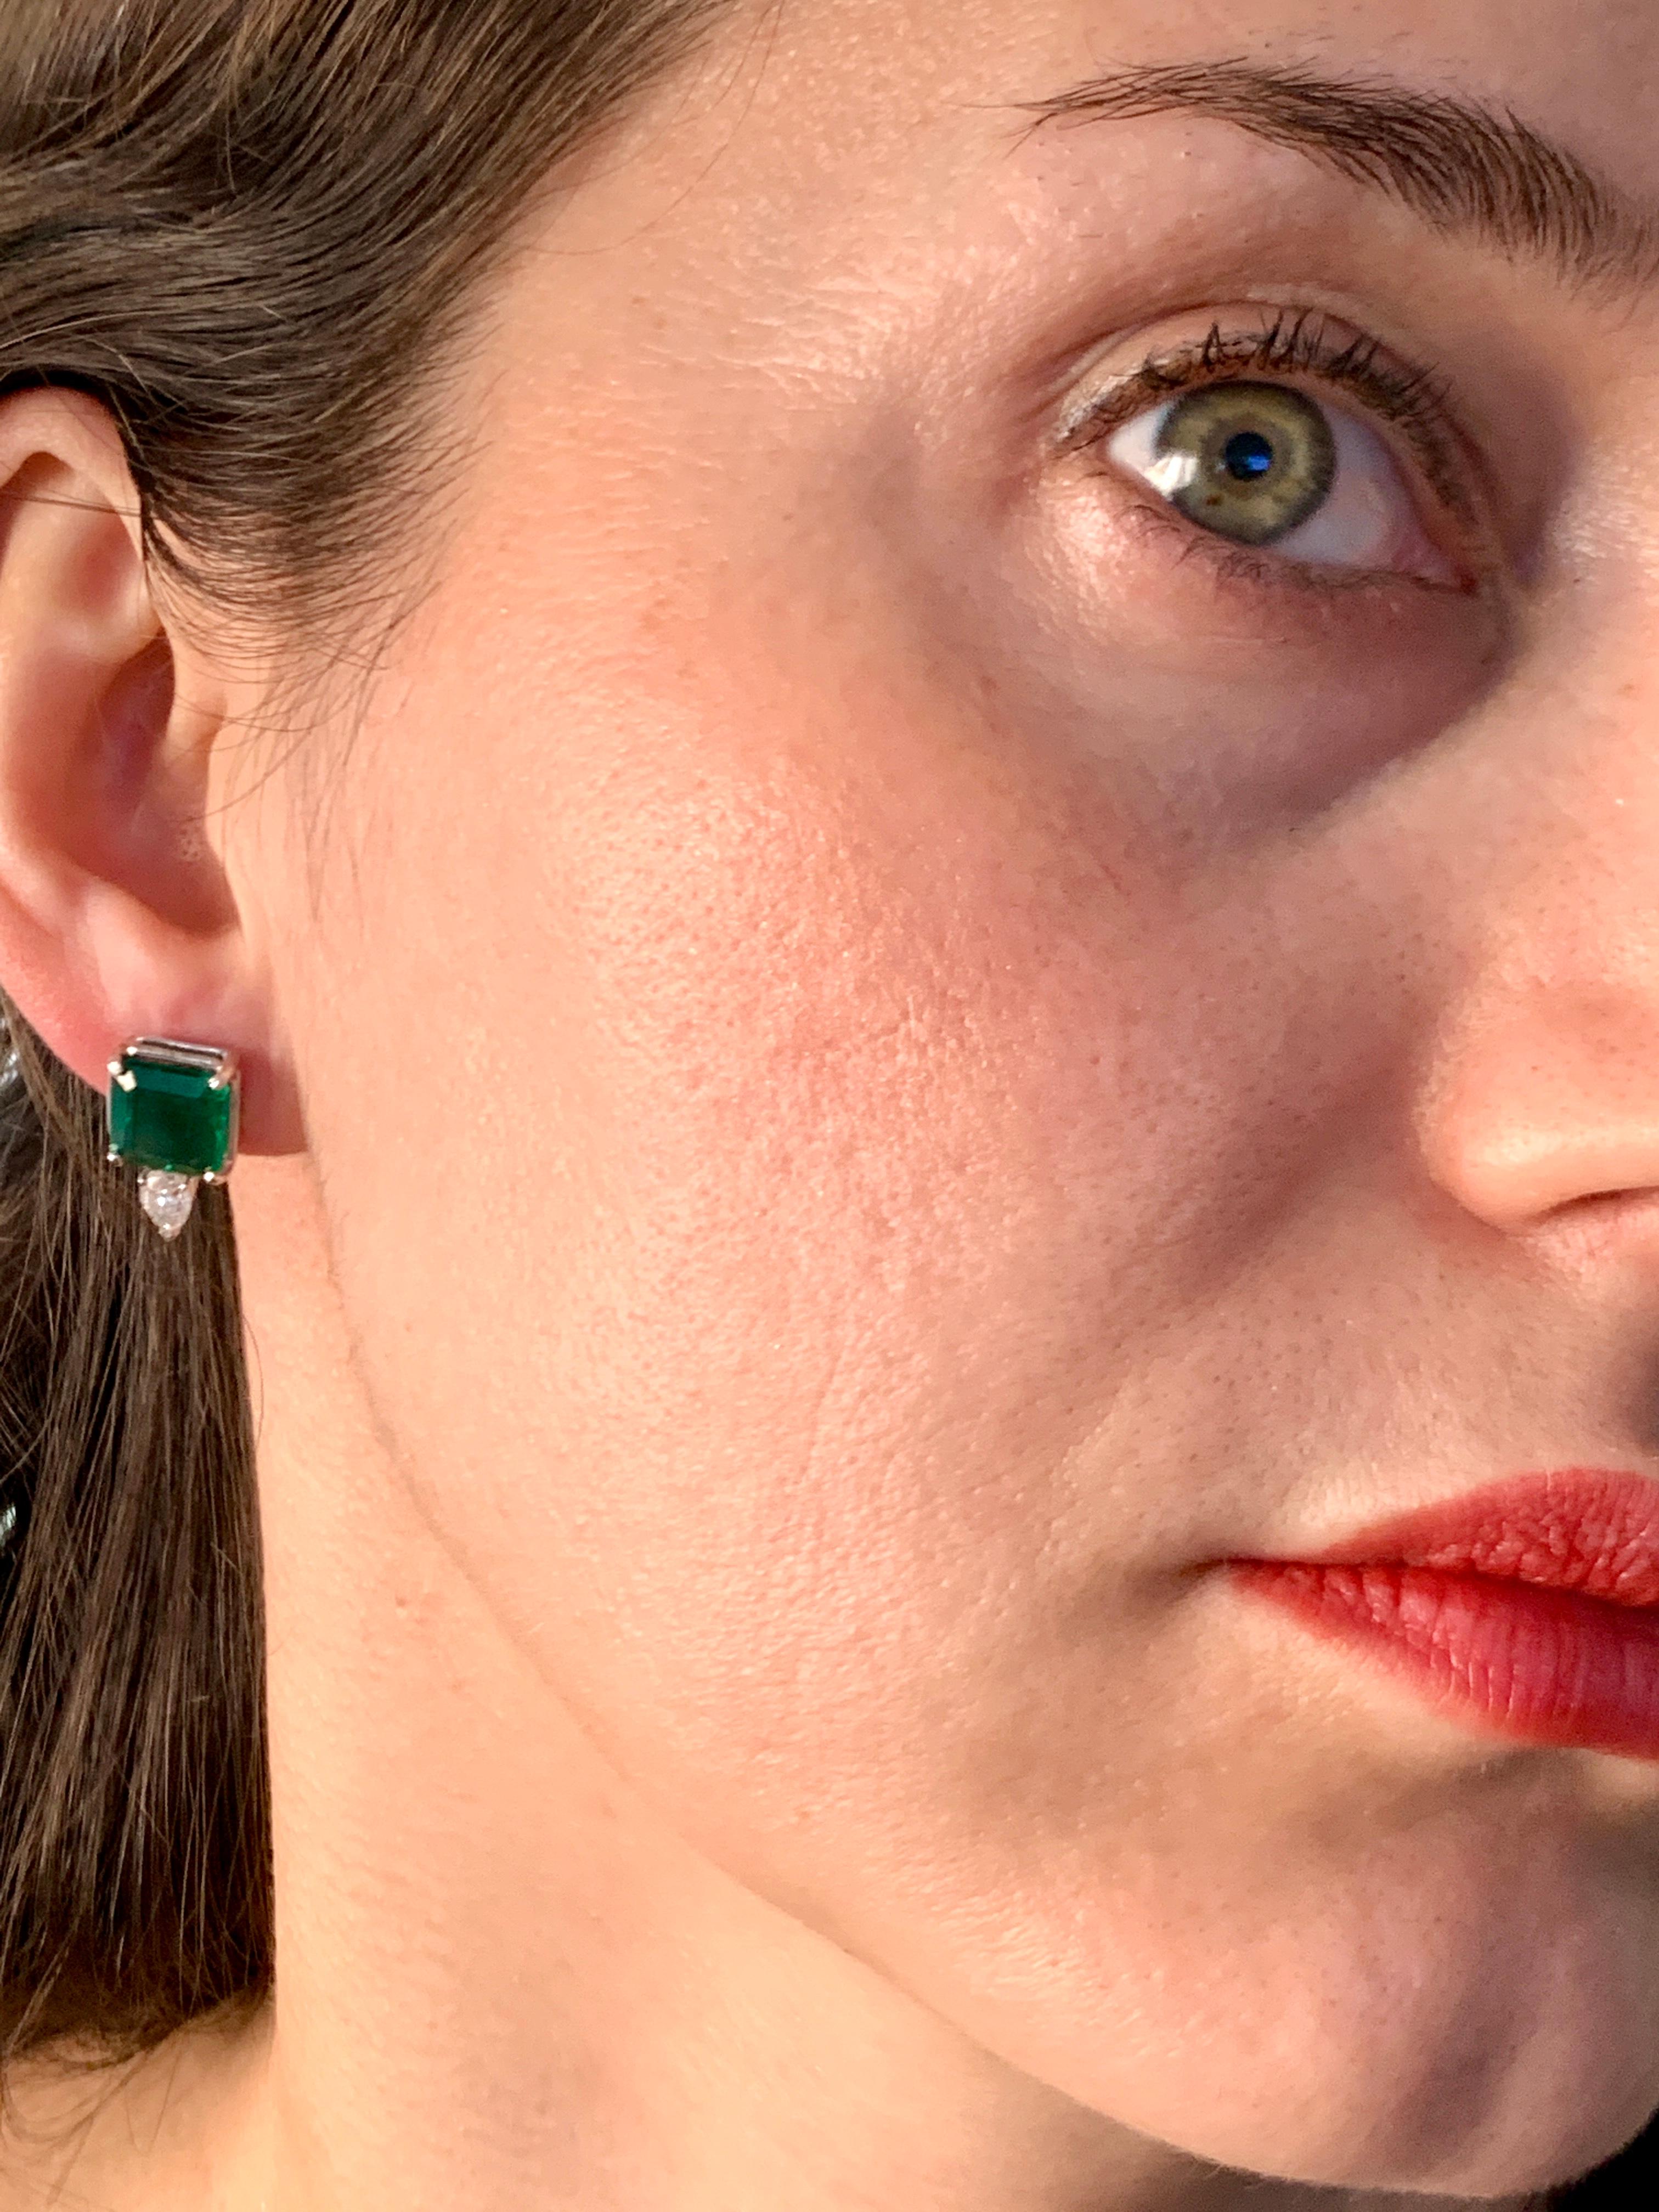 8 Carat Emerald Cut Emerald Diamond Stud Earrings 18 Karat Gold For Sale 4